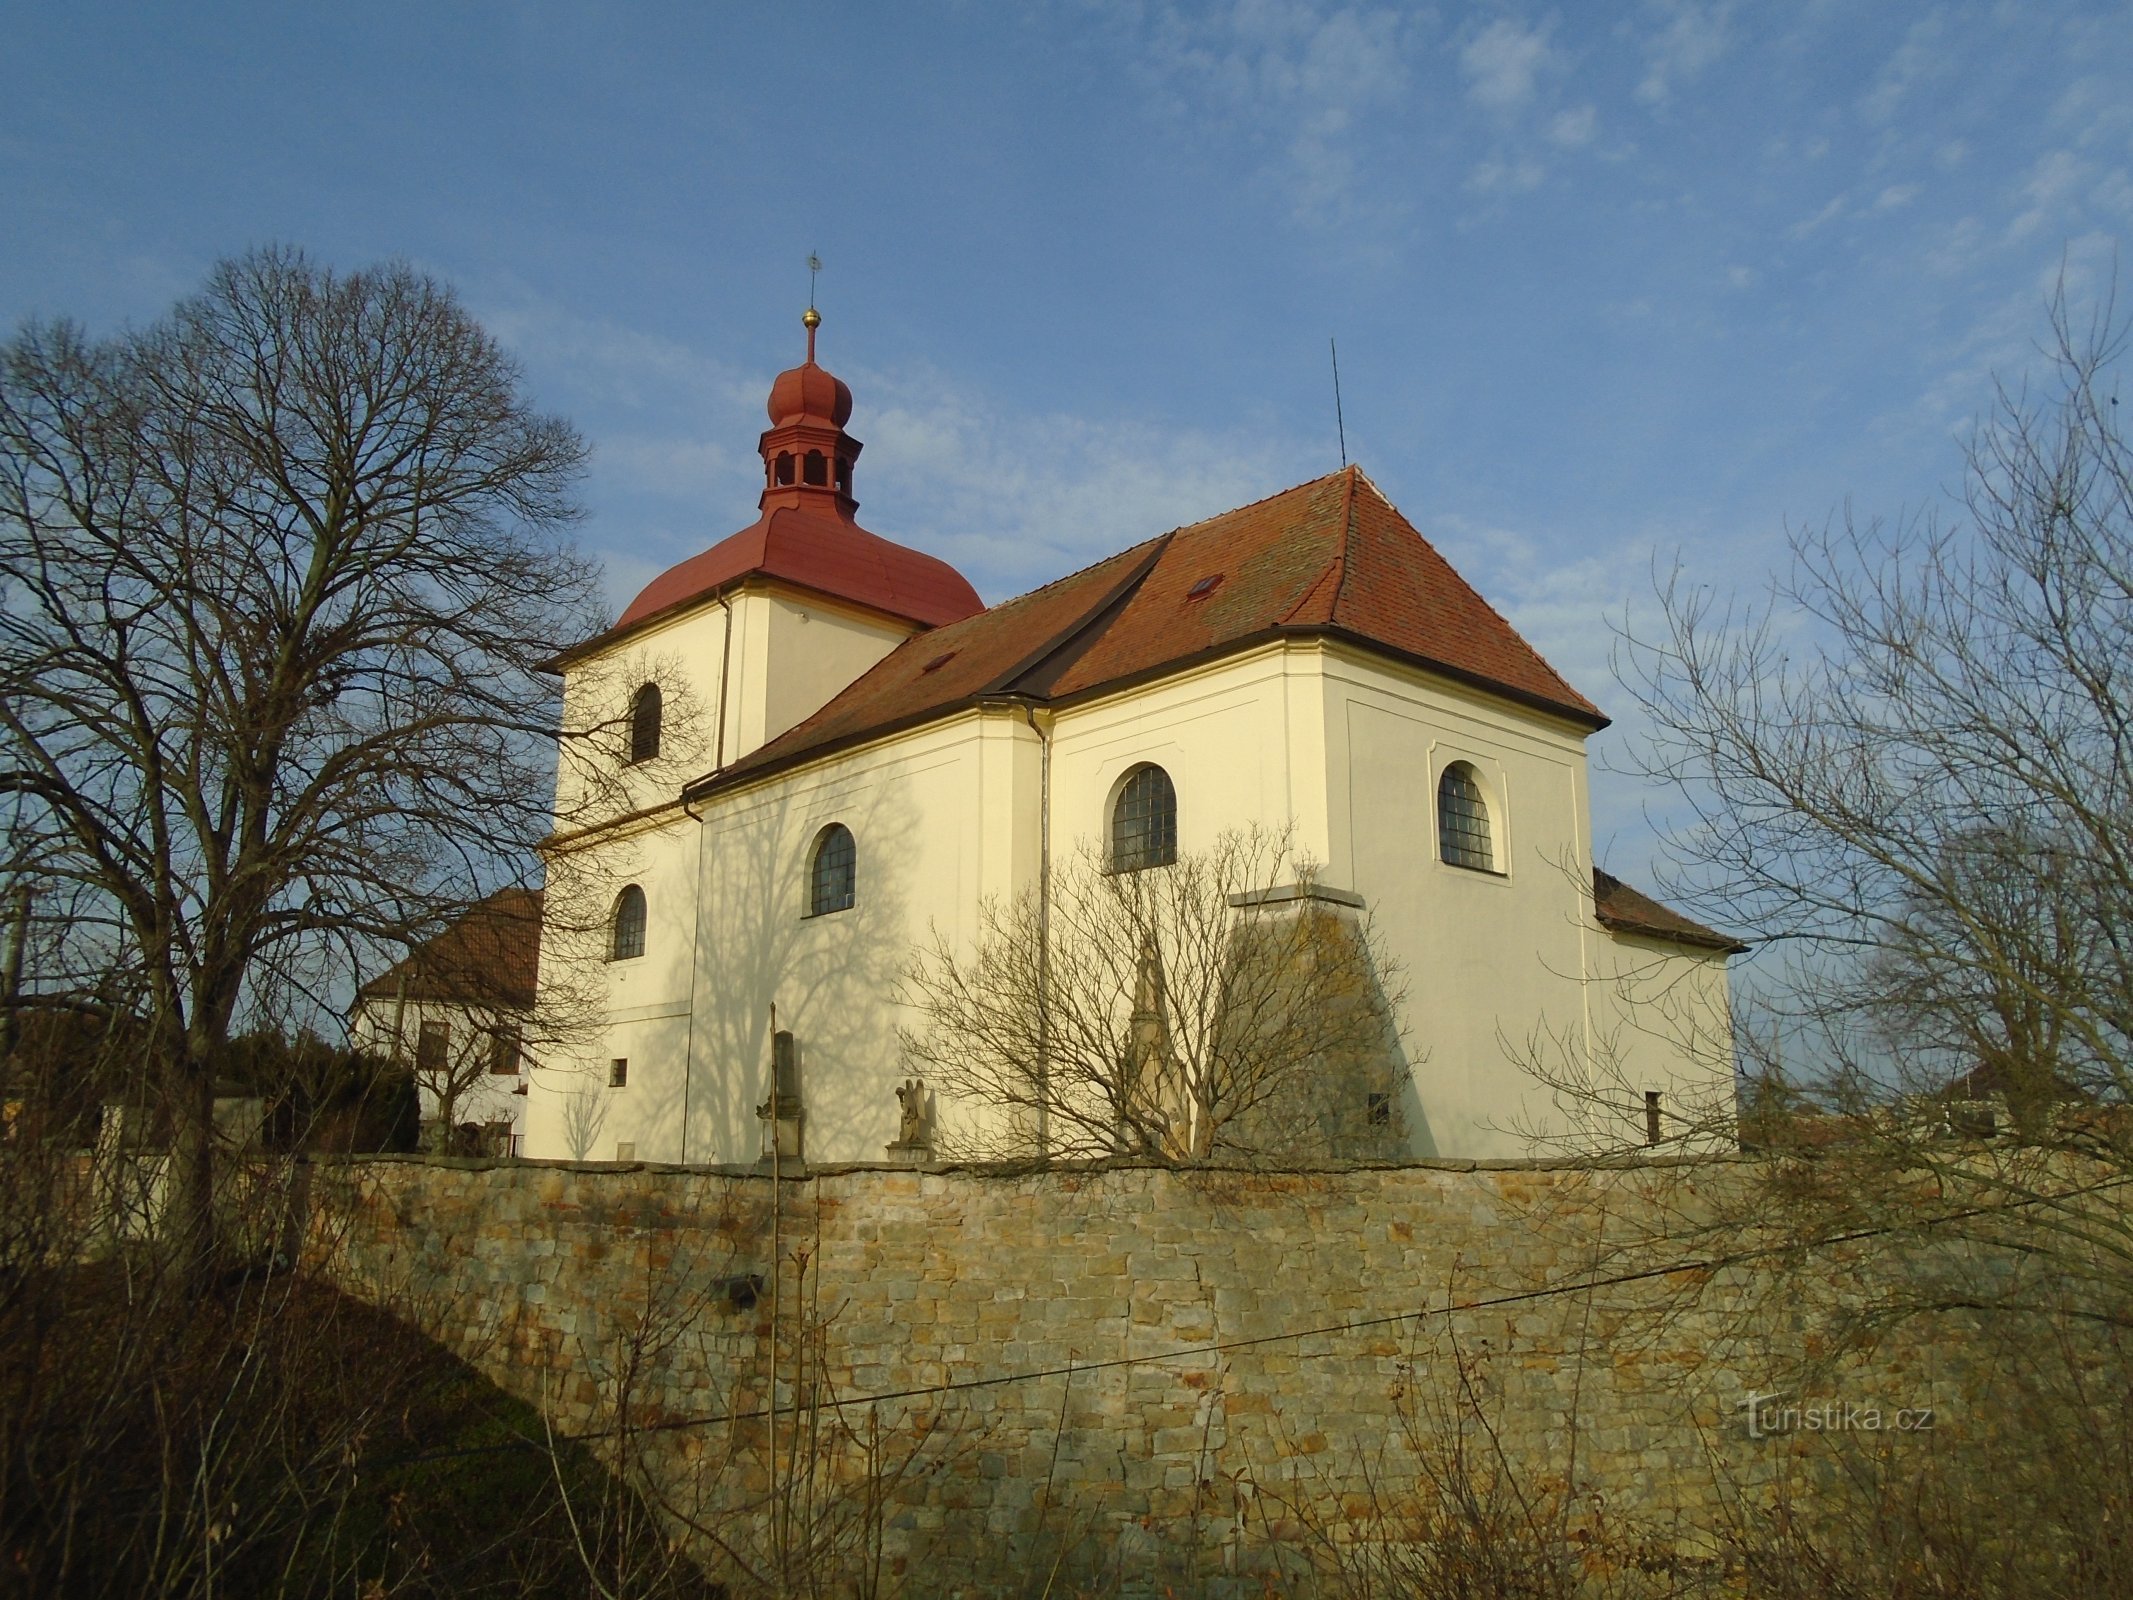 Церковь св. Станислав, епископ и мученик (Сендражице)